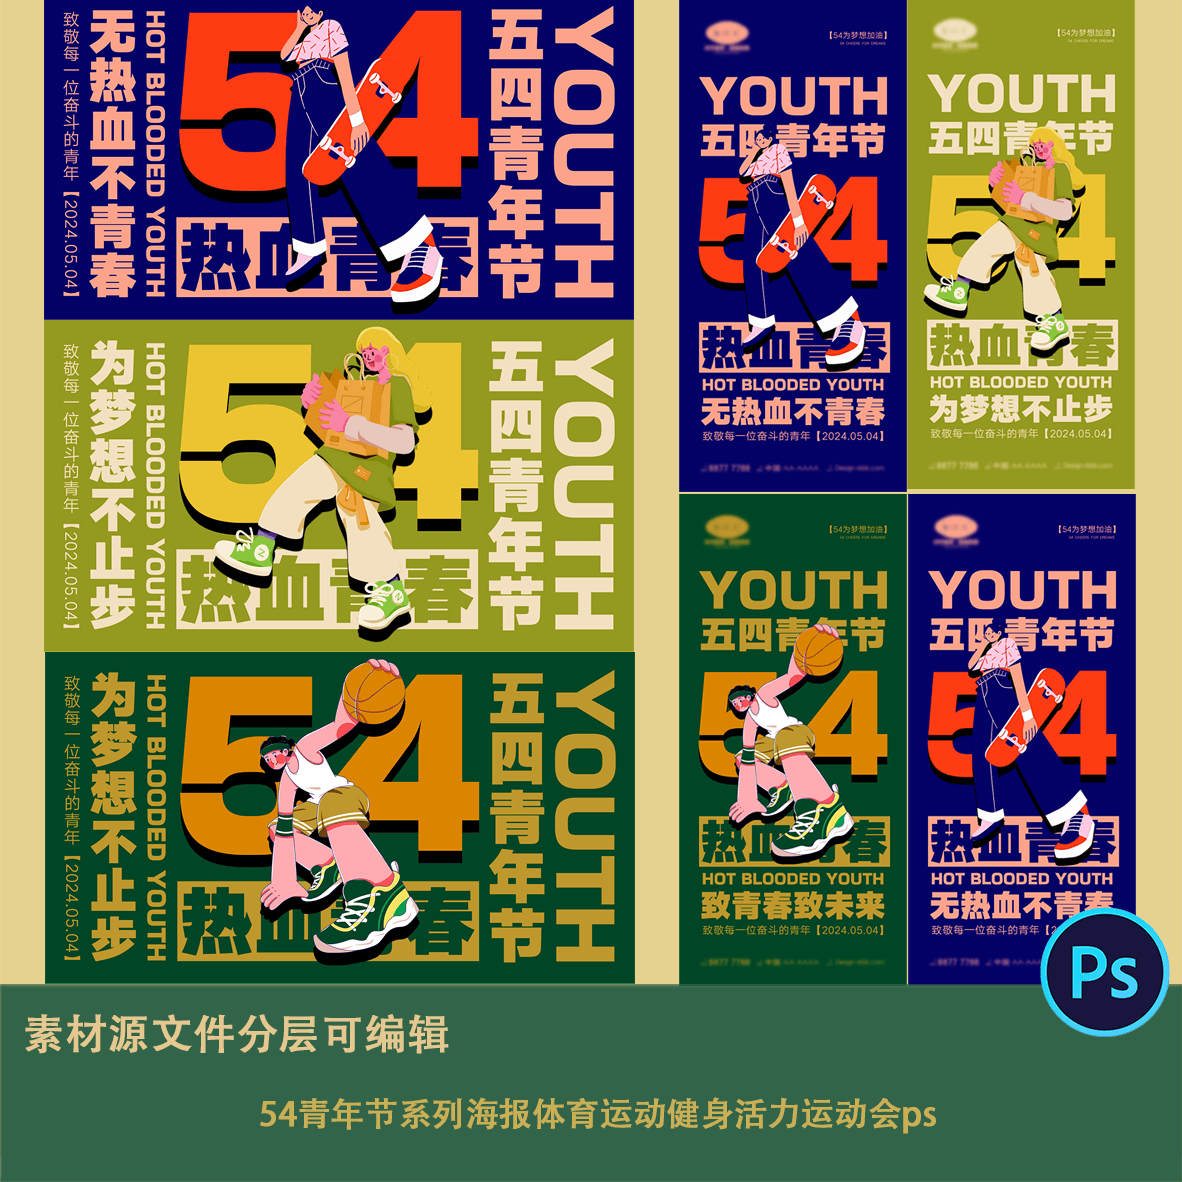 54青年节系列海报体育运动健身活力运动会背景展板ps潮流炫酷复古